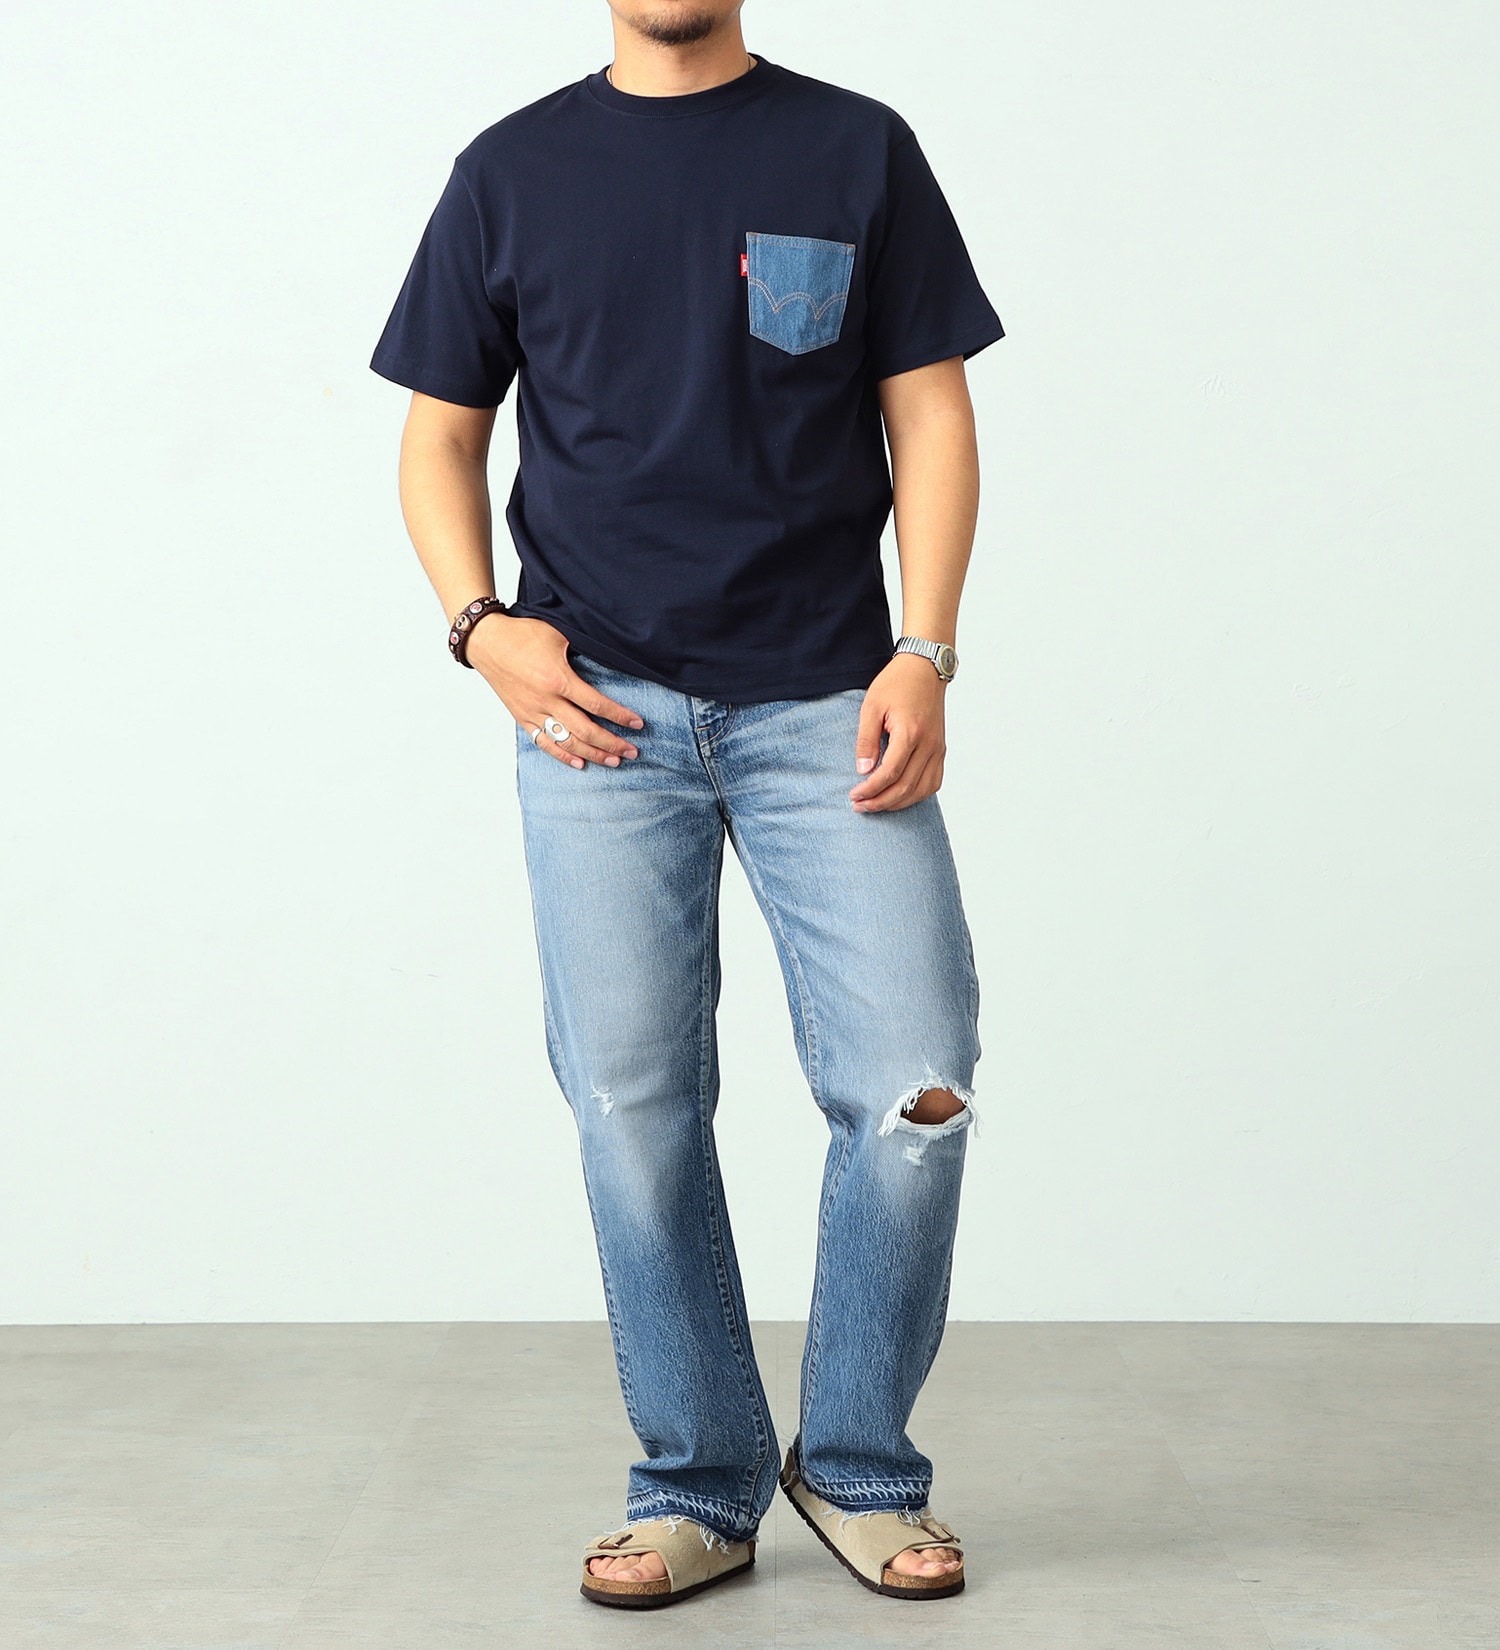 EDWIN(エドウイン)のデニムポケット半袖Tシャツ|トップス/Tシャツ/カットソー/メンズ|ネイビー